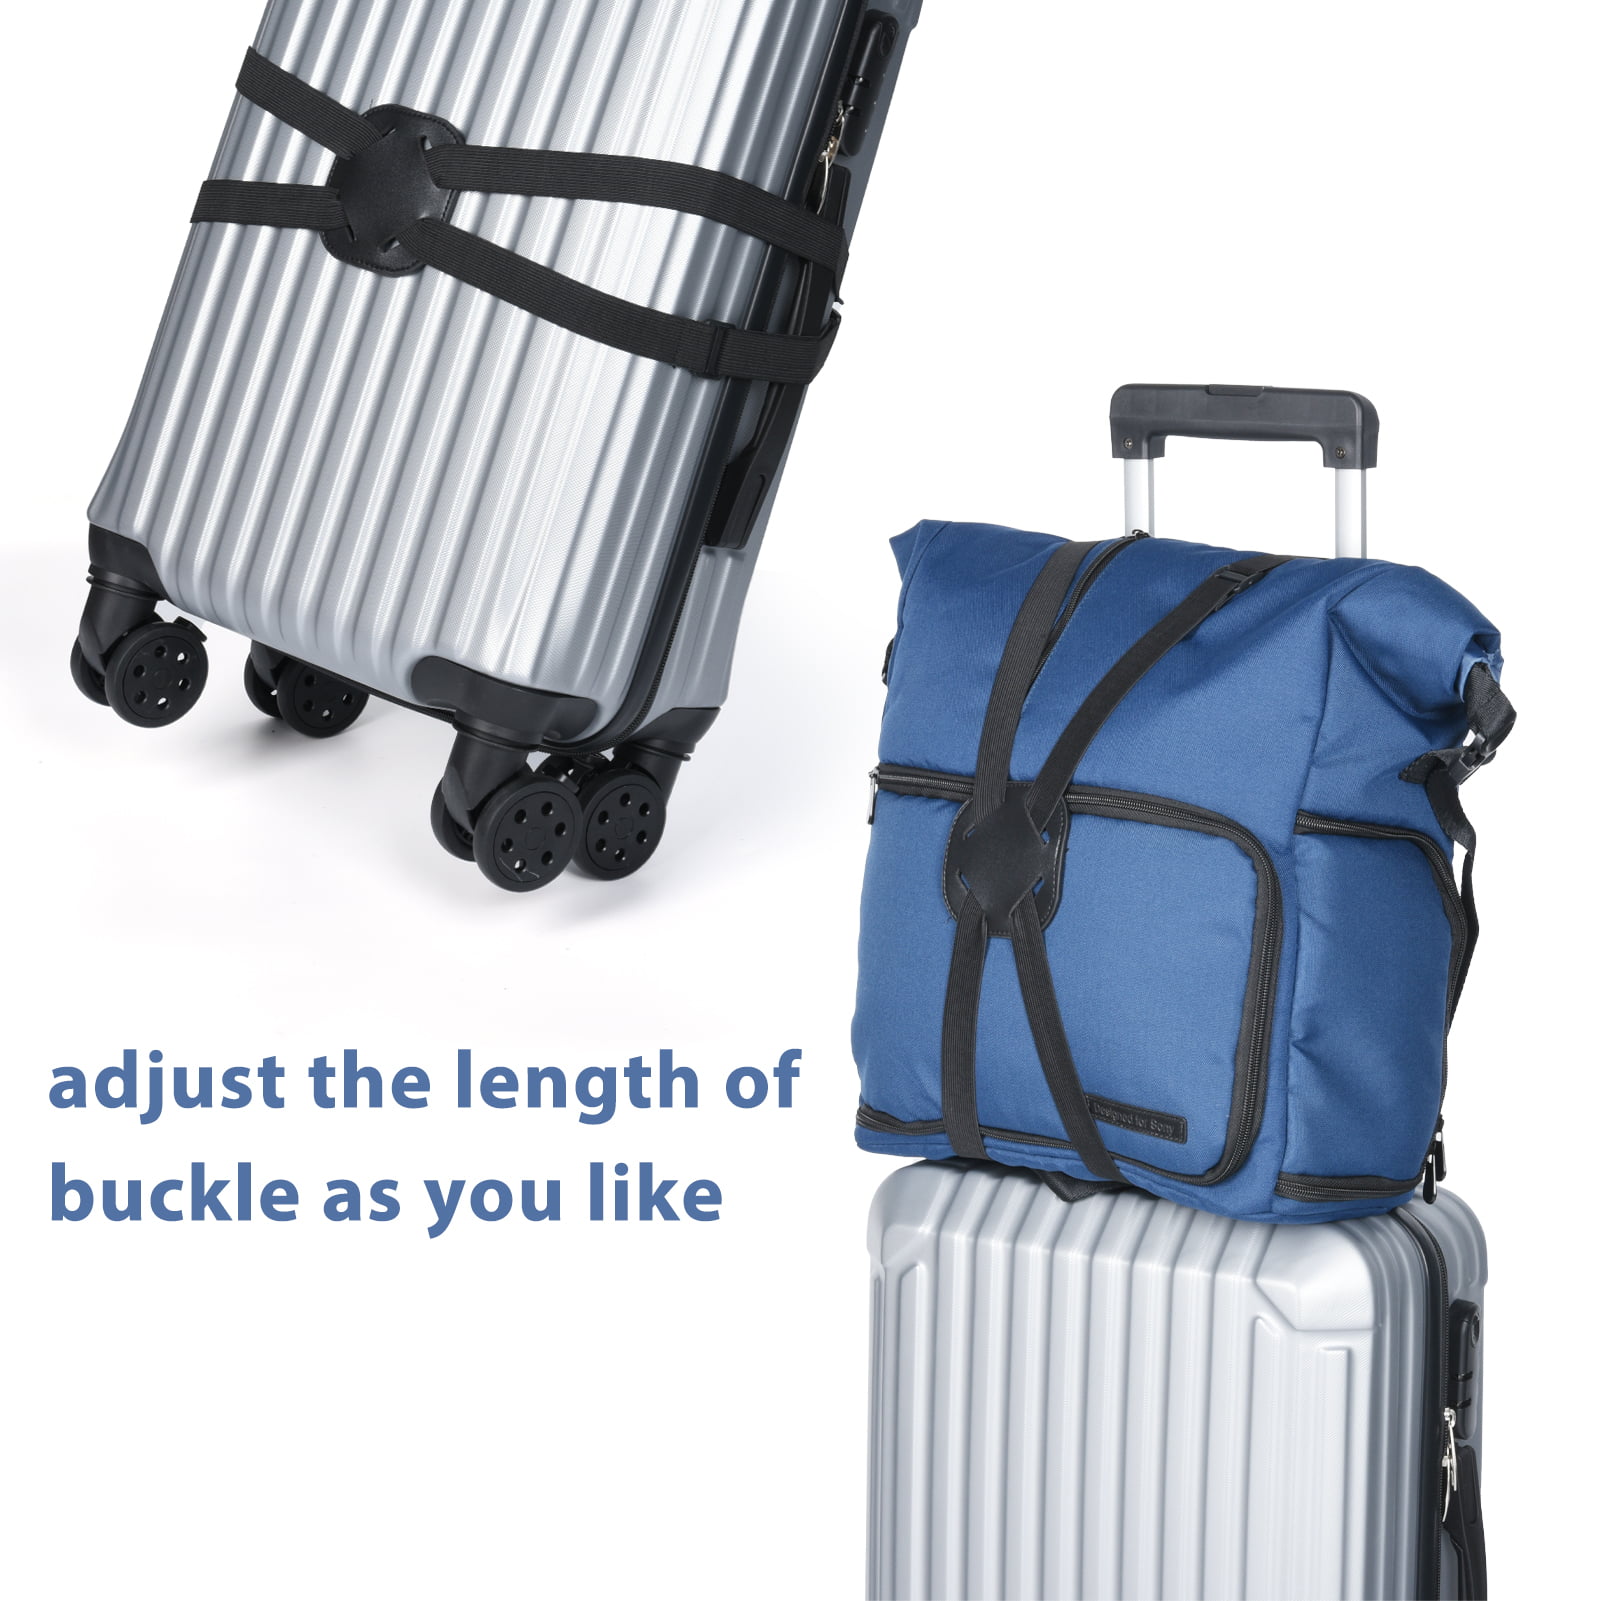  SOWPOPY Travel Belt for Luggage, Add a Bag Luggage